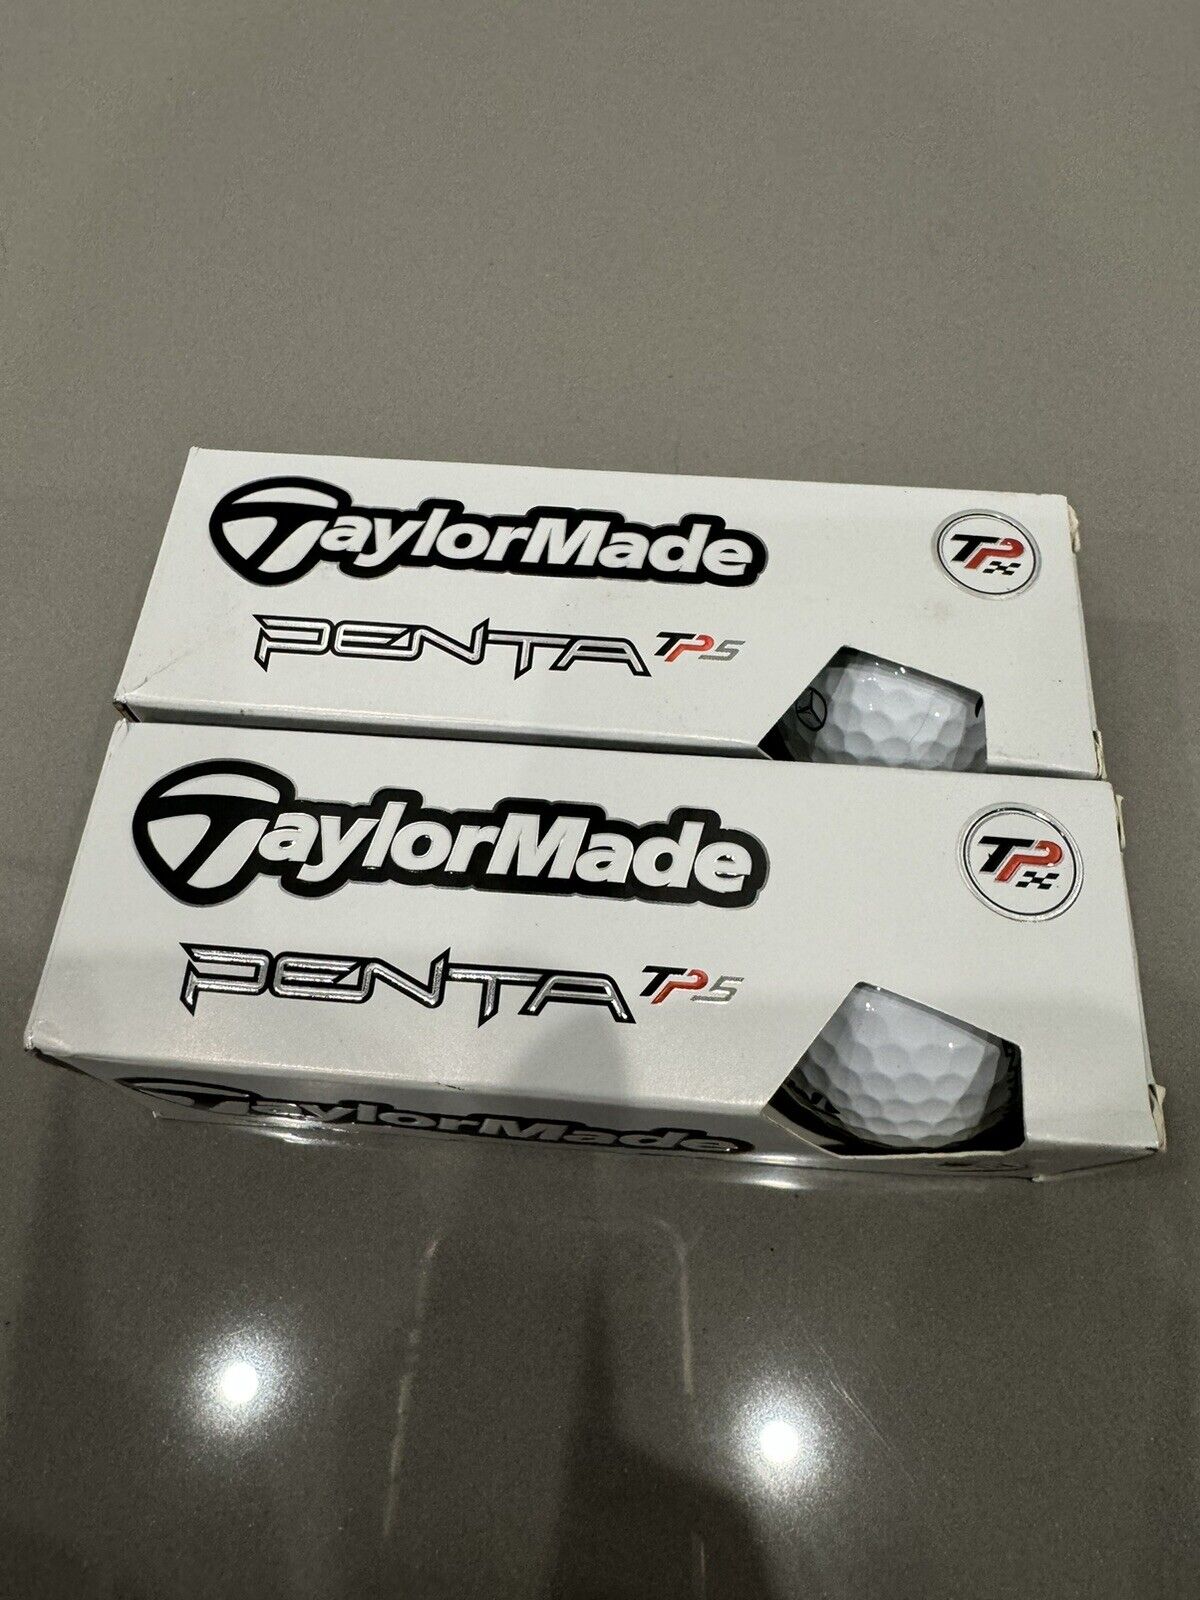 Taylor Made Penta Tp5 Golf Balls, Titleist Mercedes Tournament Balls